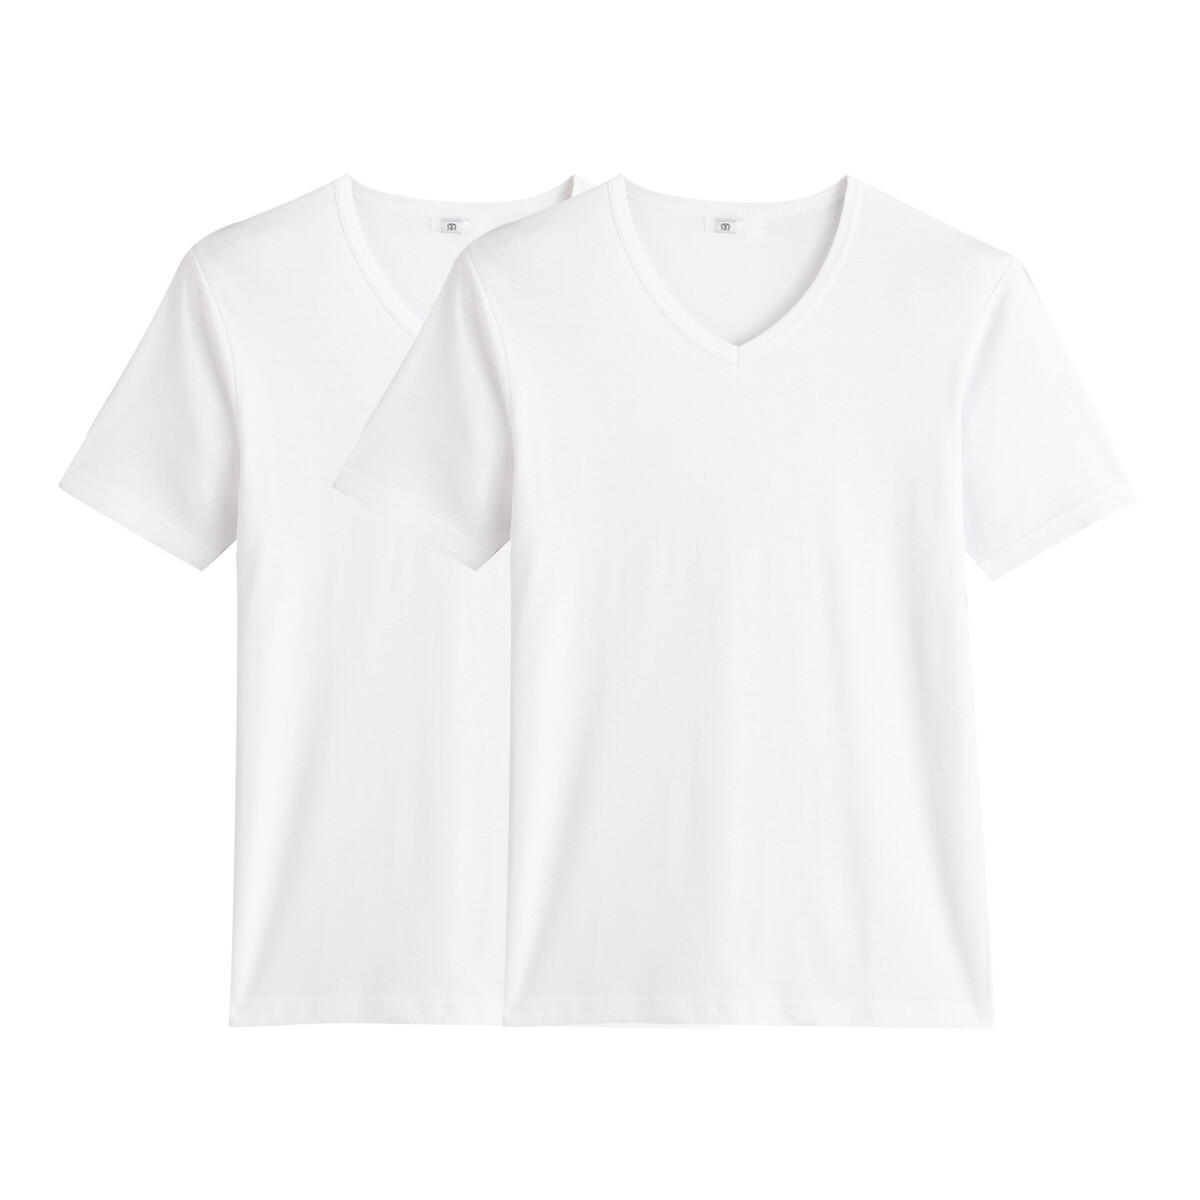 Galeries Lafayette Vêtements Sous-vêtements Maillots de corps Lot de 3 maillots de corps coton bio Blanc 